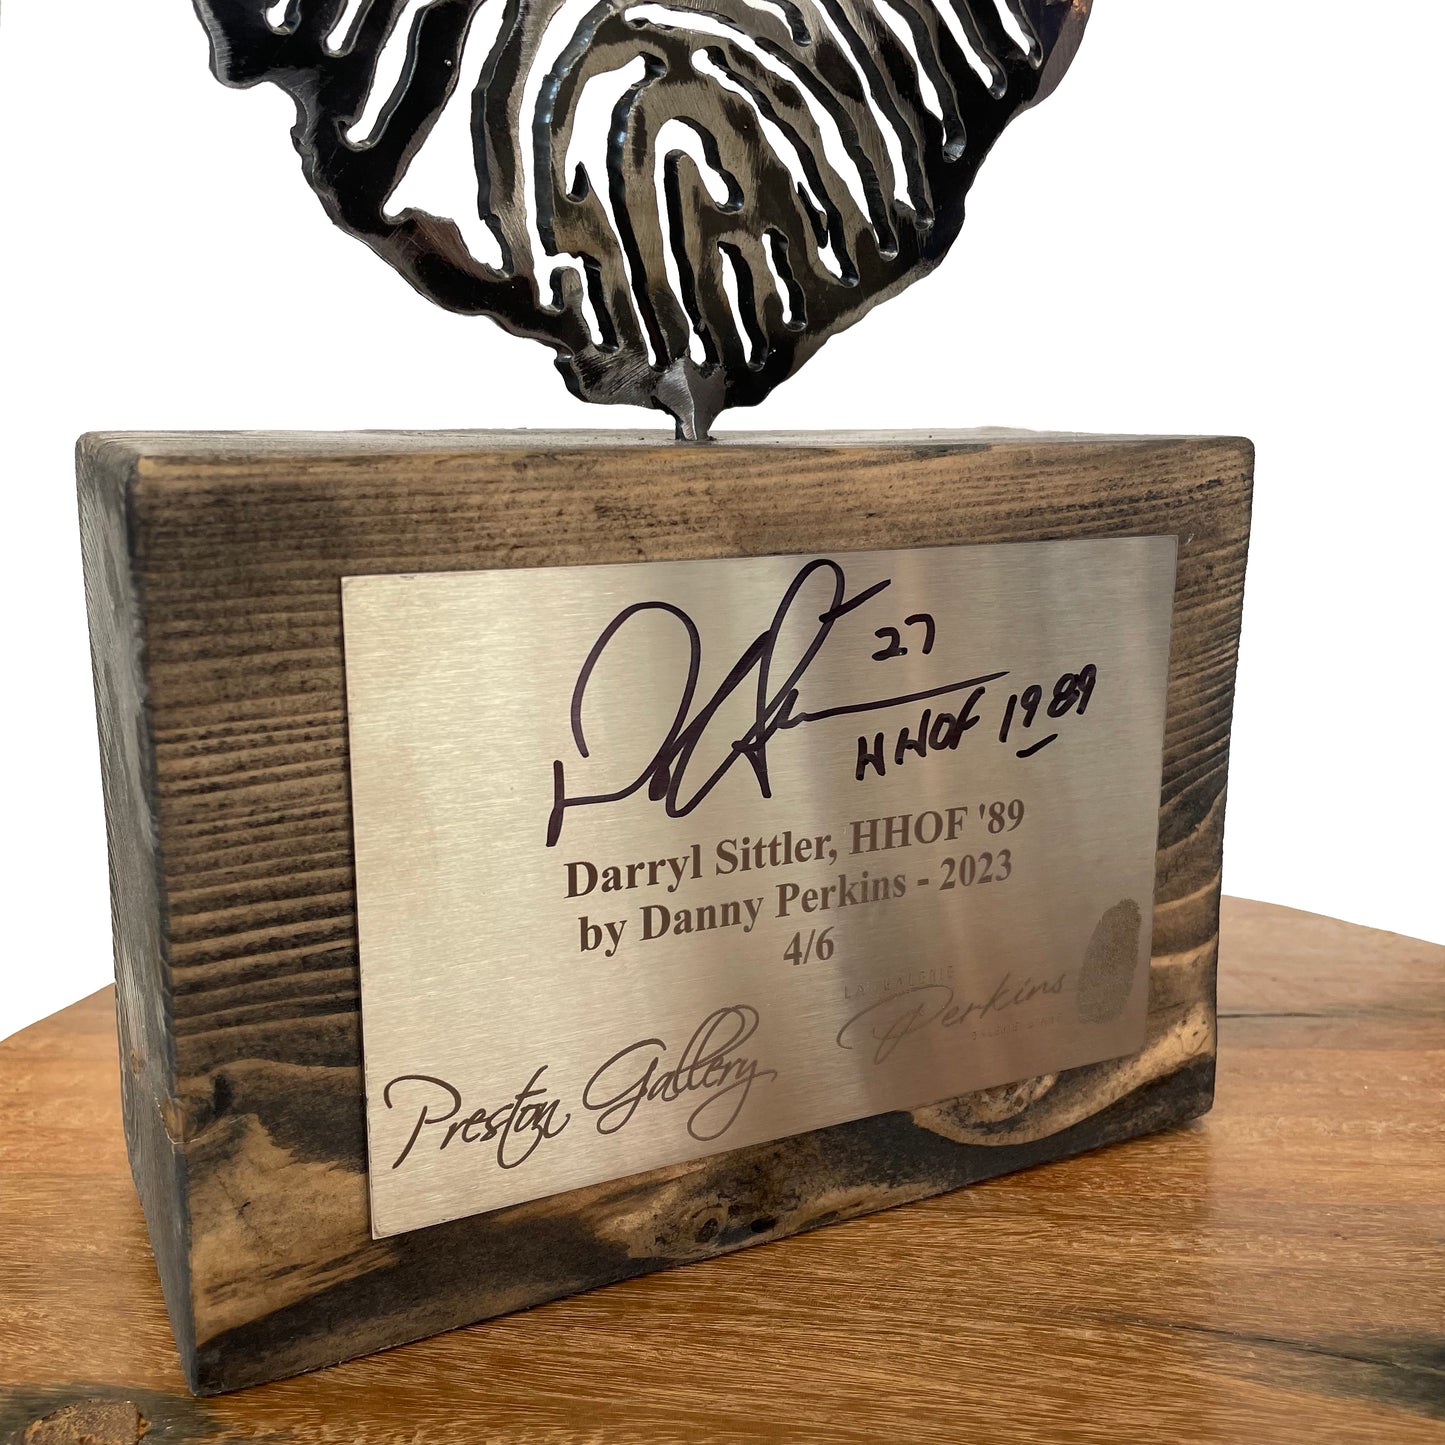 Signed Darryl Sittler, Finger Print by Danny Perkins